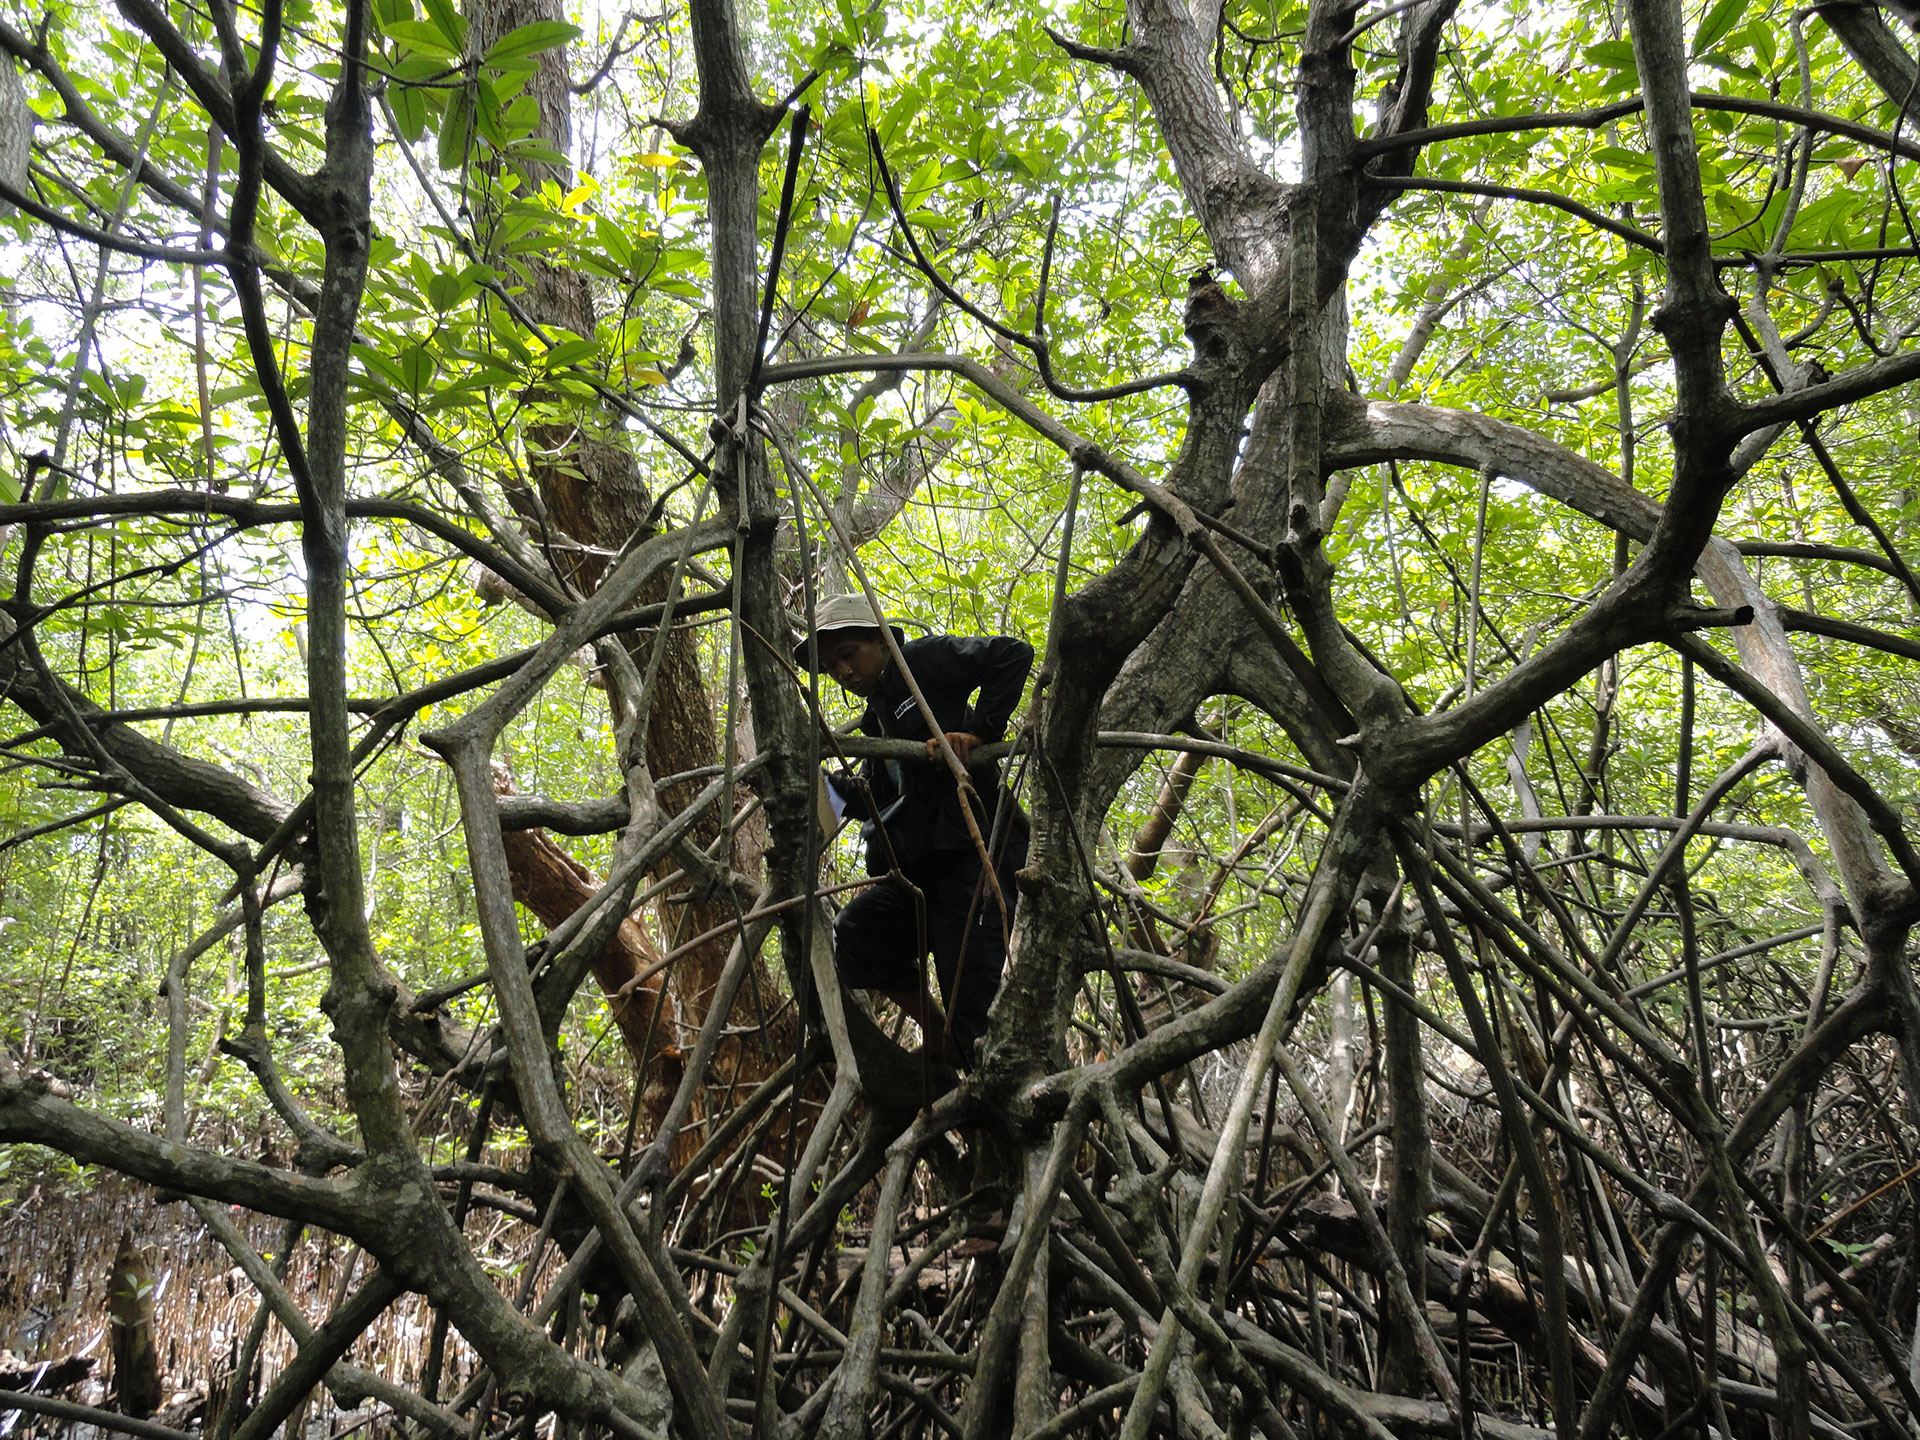 Panduan Pengenalan Mangrove di Indonesia - Wetlands International Indonesia